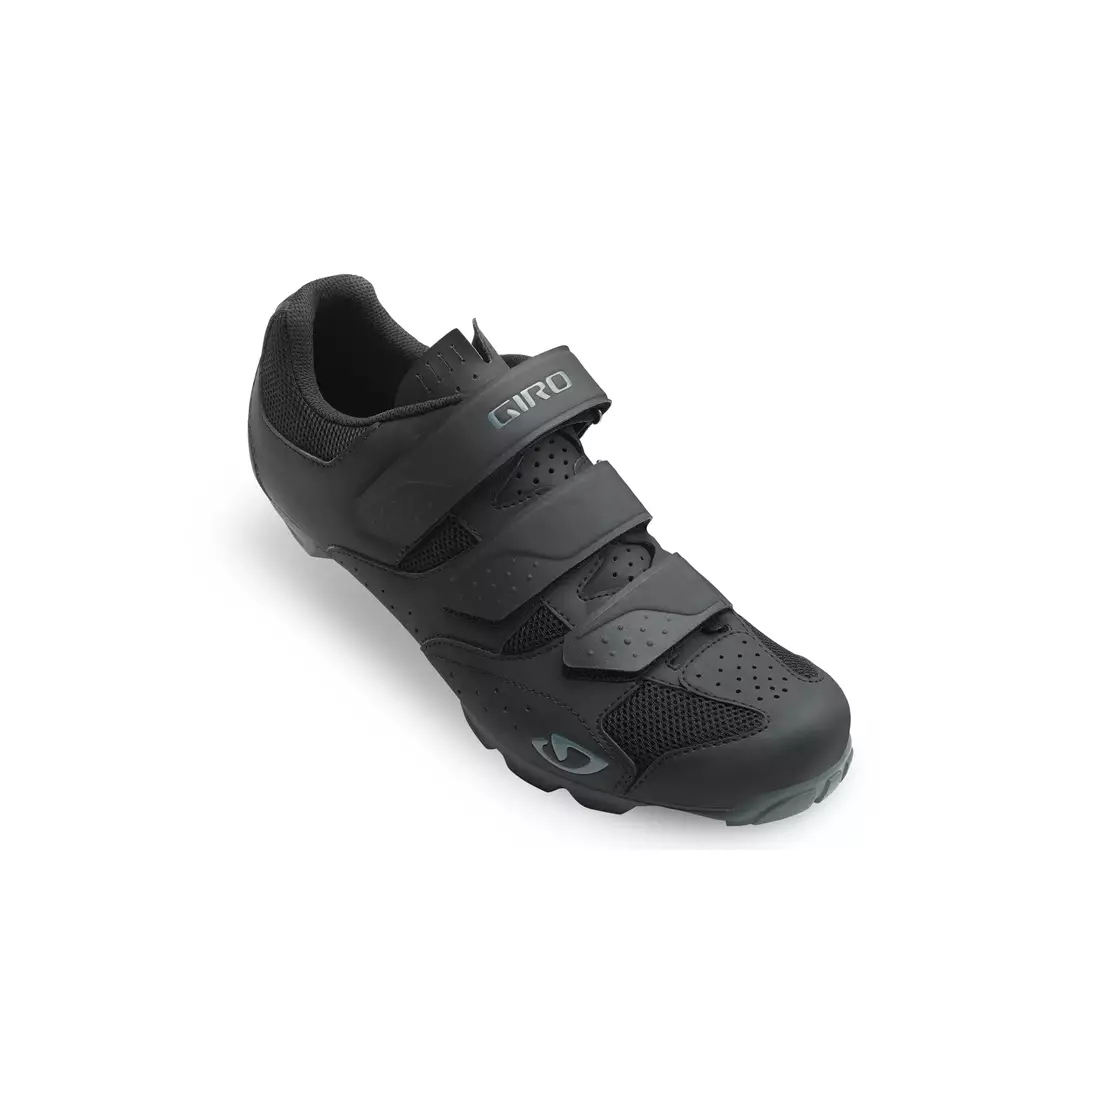 GIRO CARBIDE R II - pánské MTB cyklistické boty černé barvy